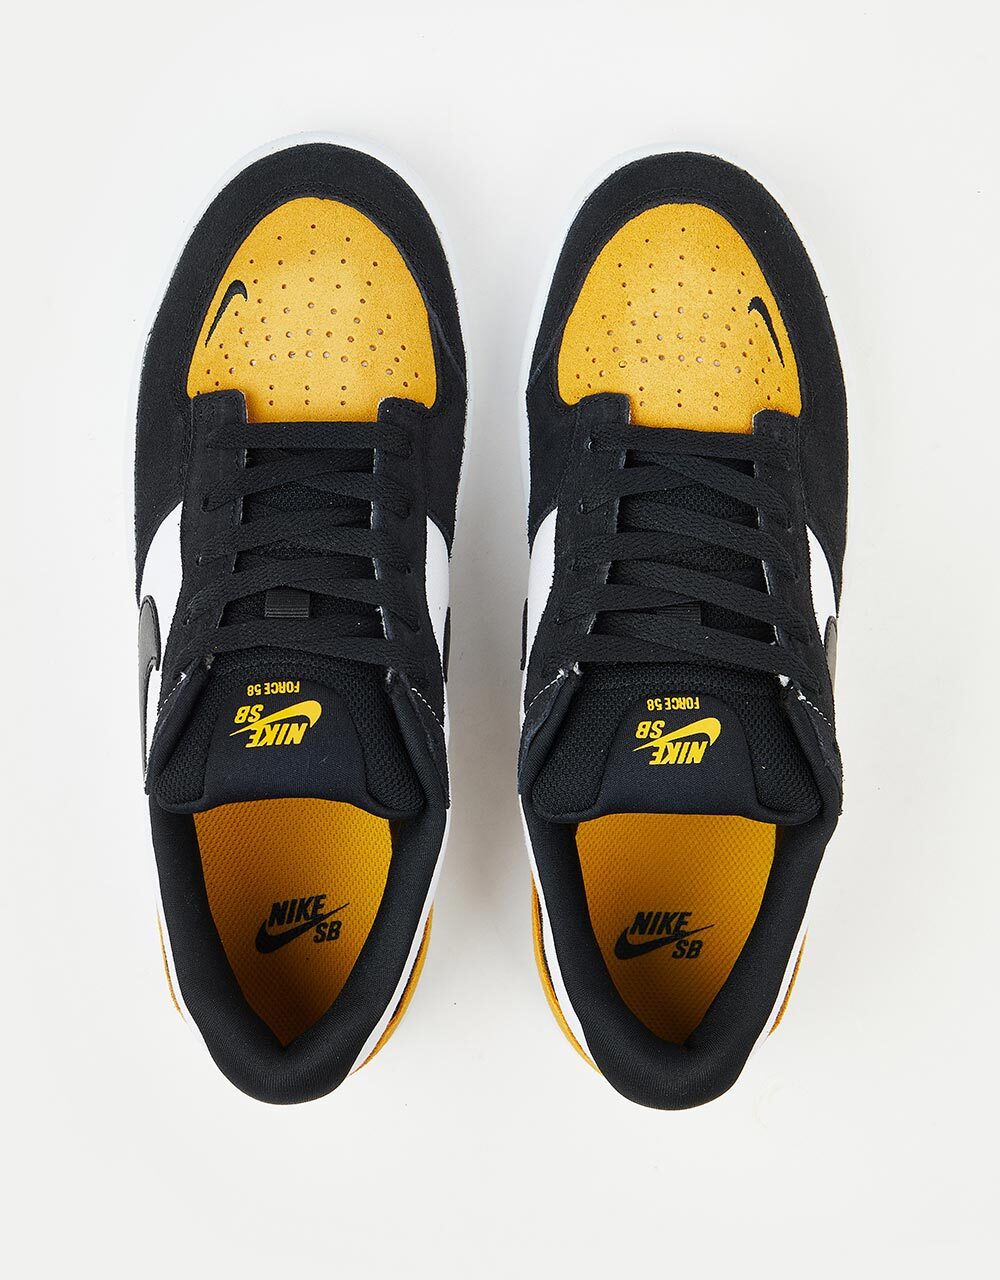 Nike SB Force 58 Skate Shoes - University Gold/Black-White